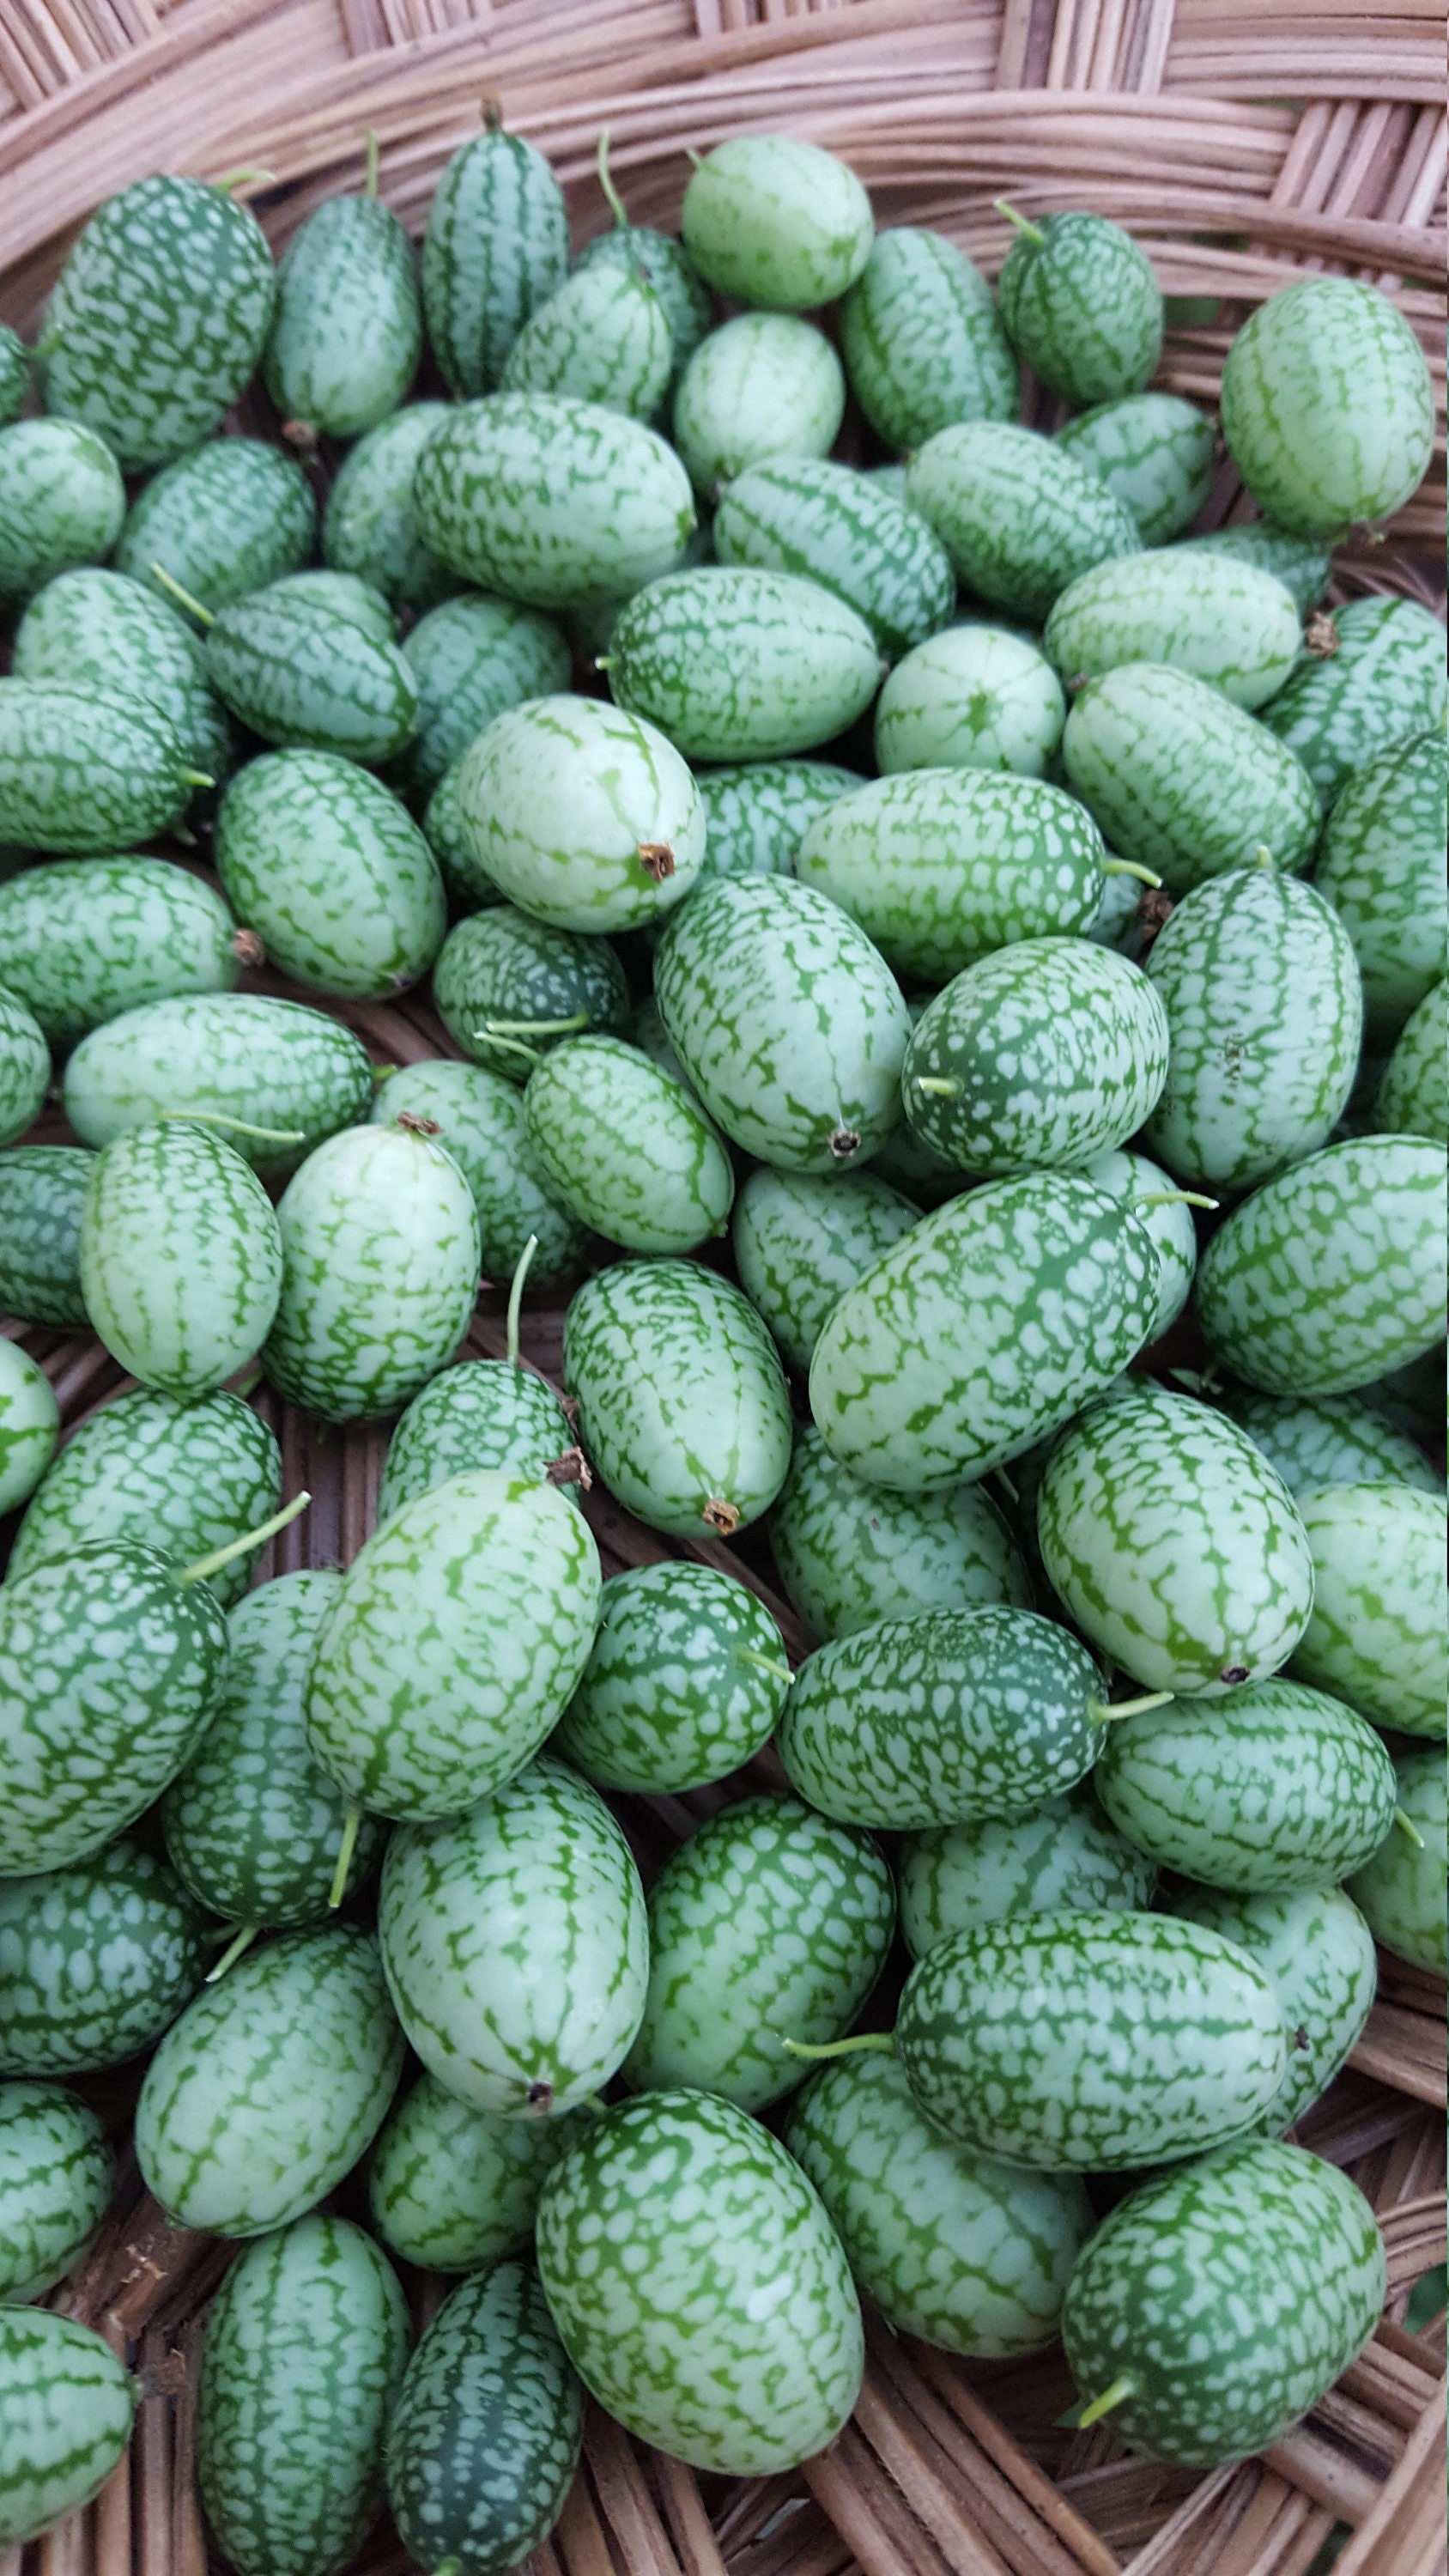 CUCAMELON  Melothria Scabra Concombre Melon 50 Graines 50 Seeds 50 Samen 